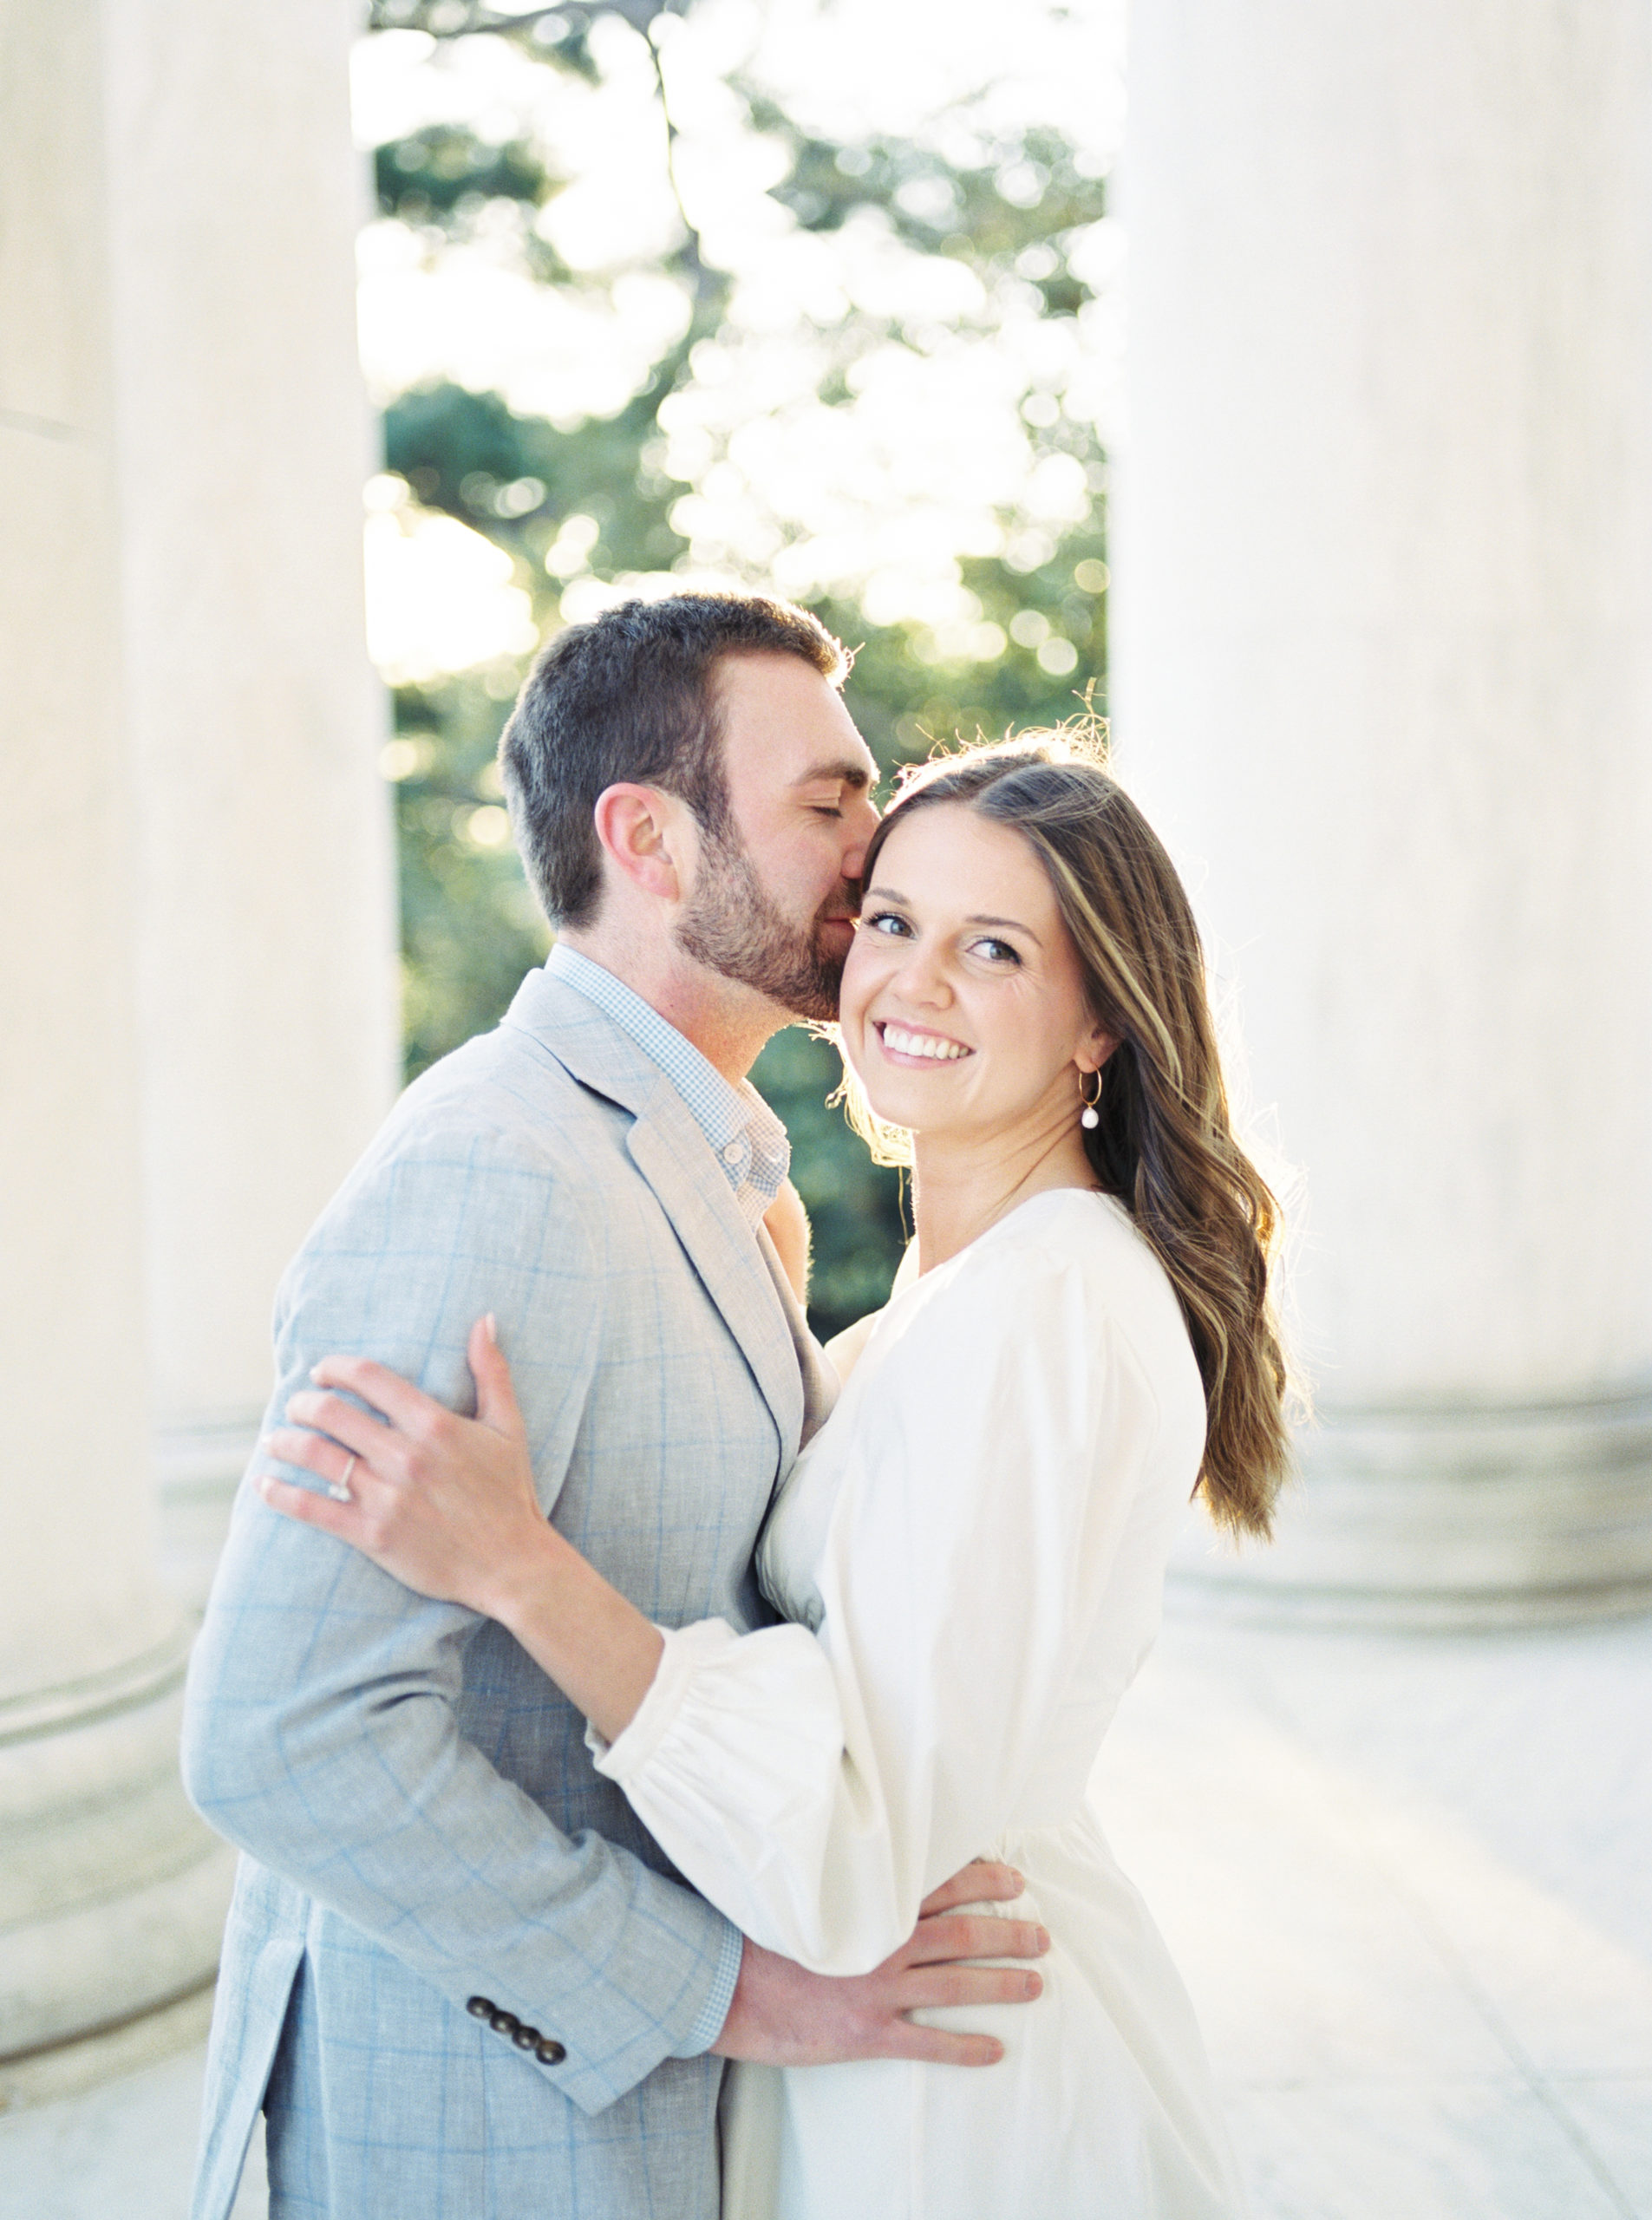 Fine art wedding photographer documents sunrise Washington DC engagement